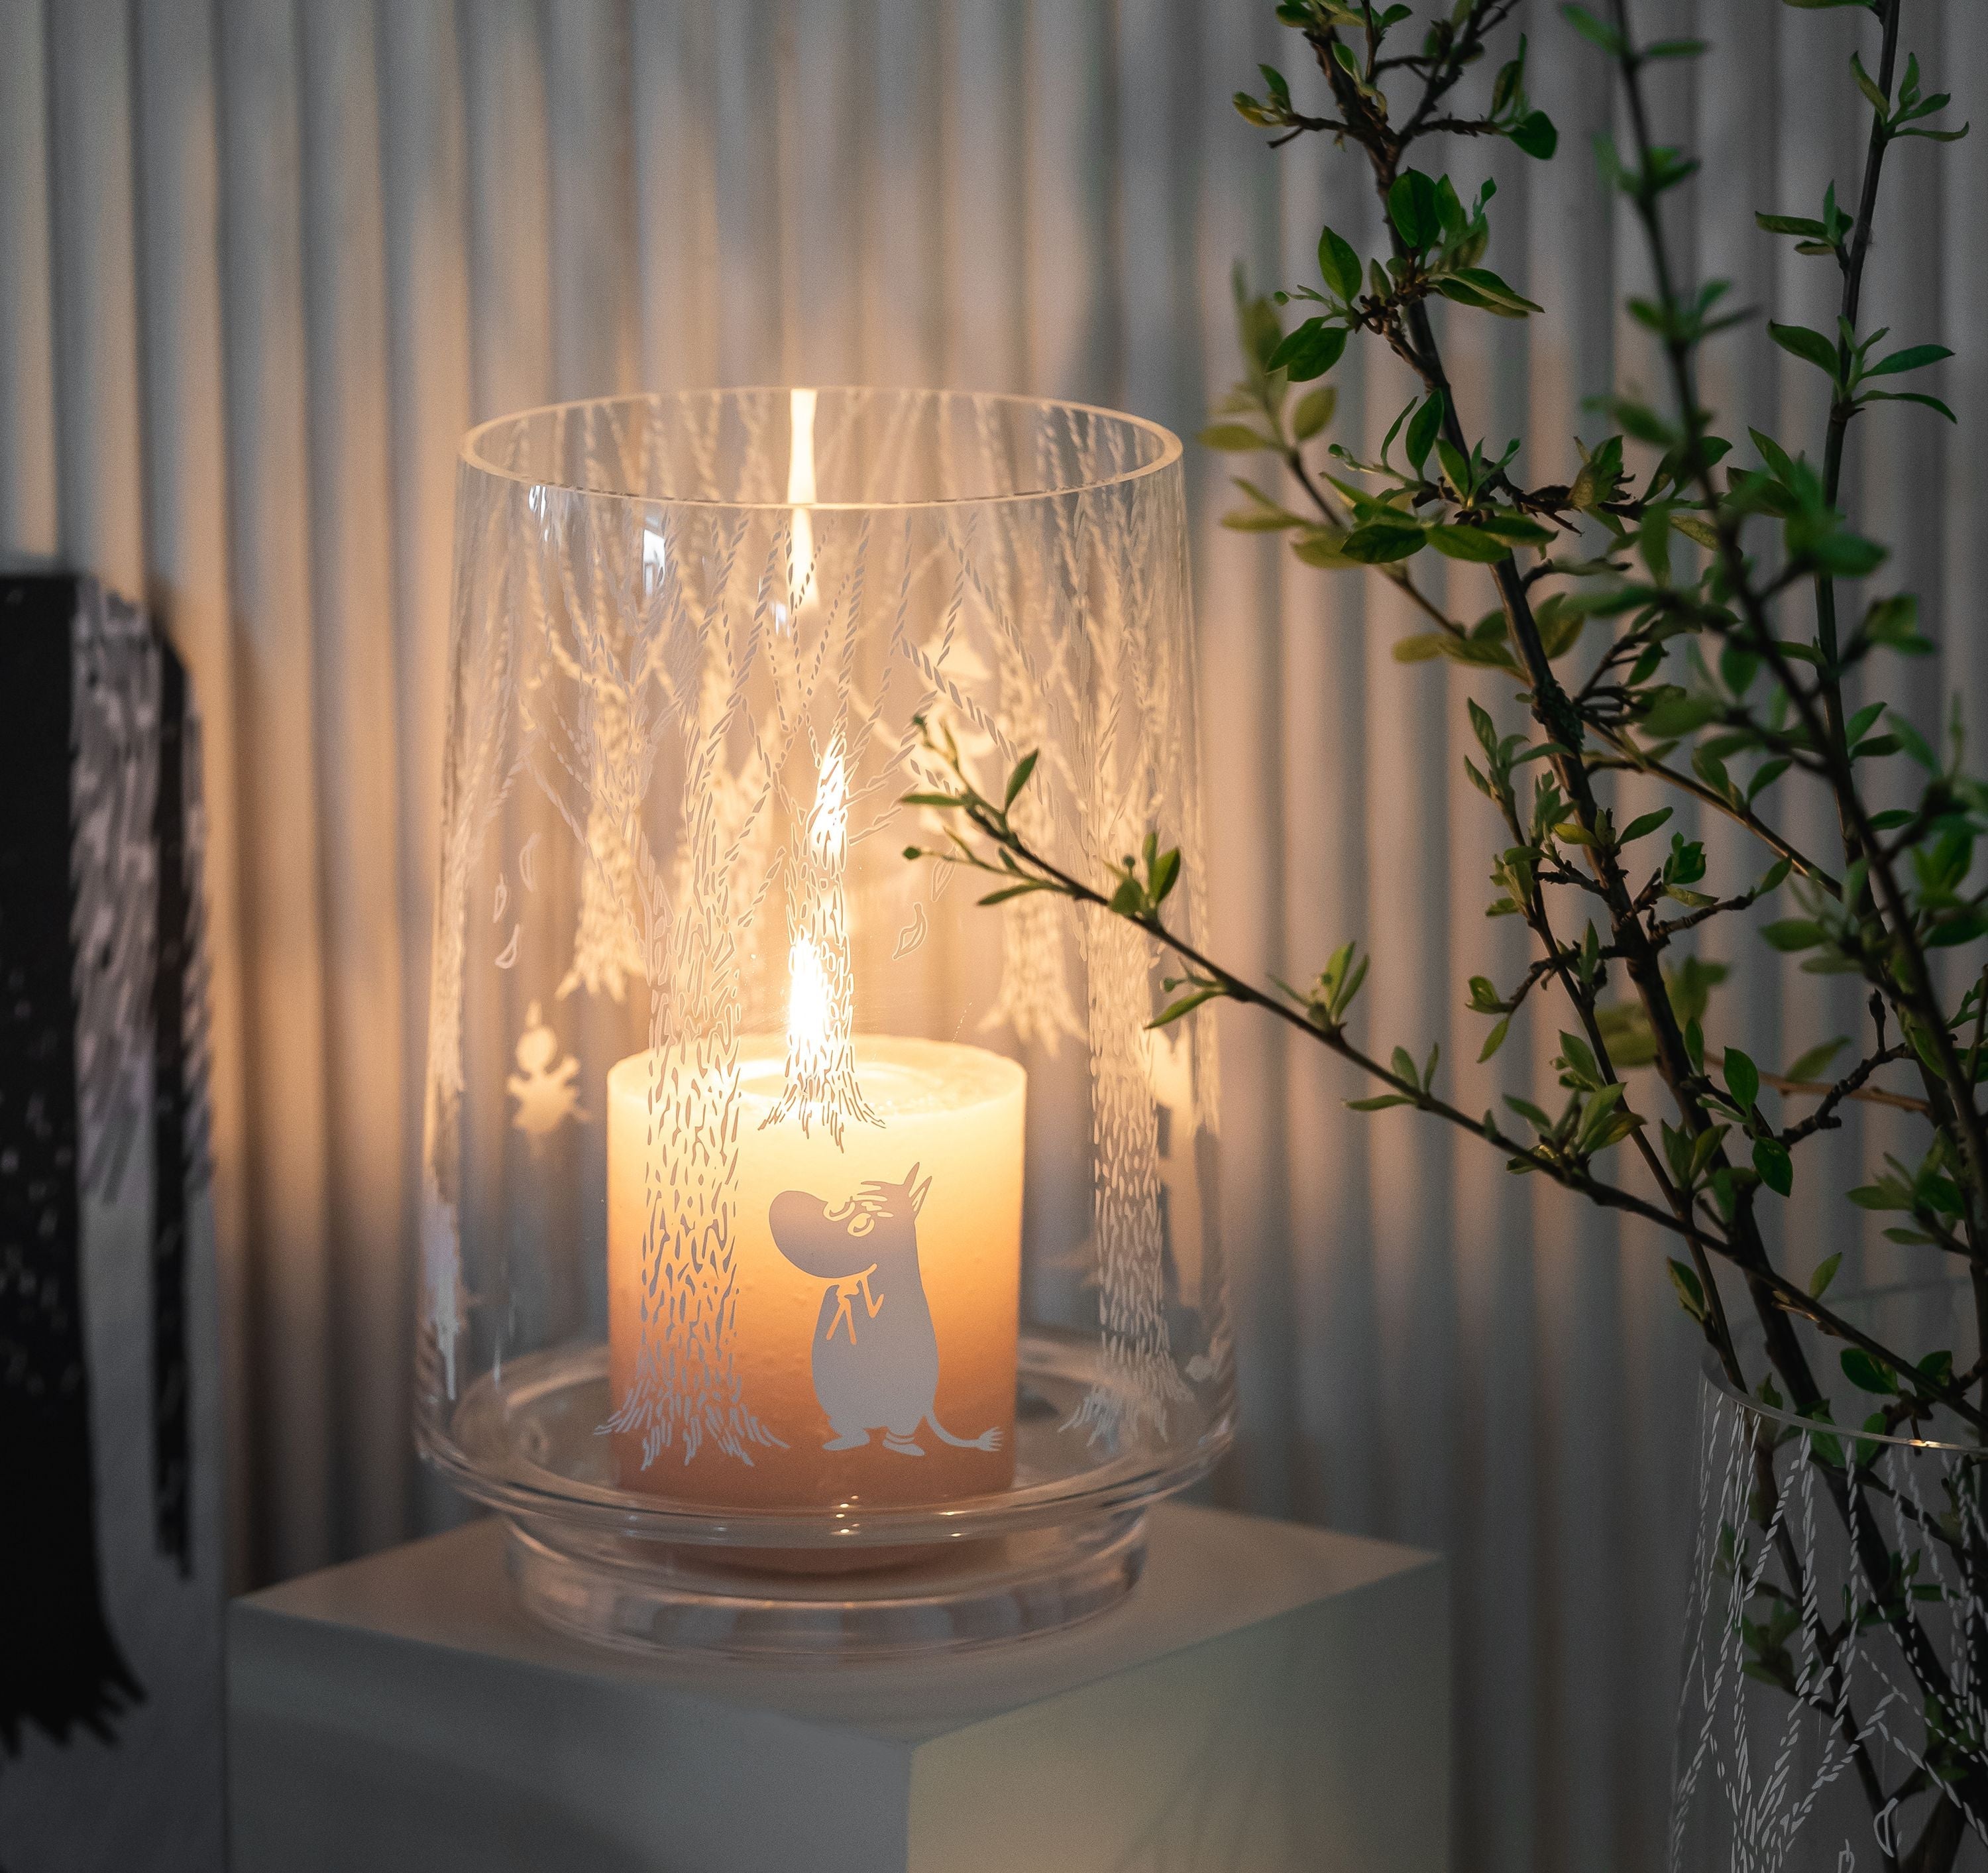 Muurla Moomin im Woods Candle Lantern/Vase